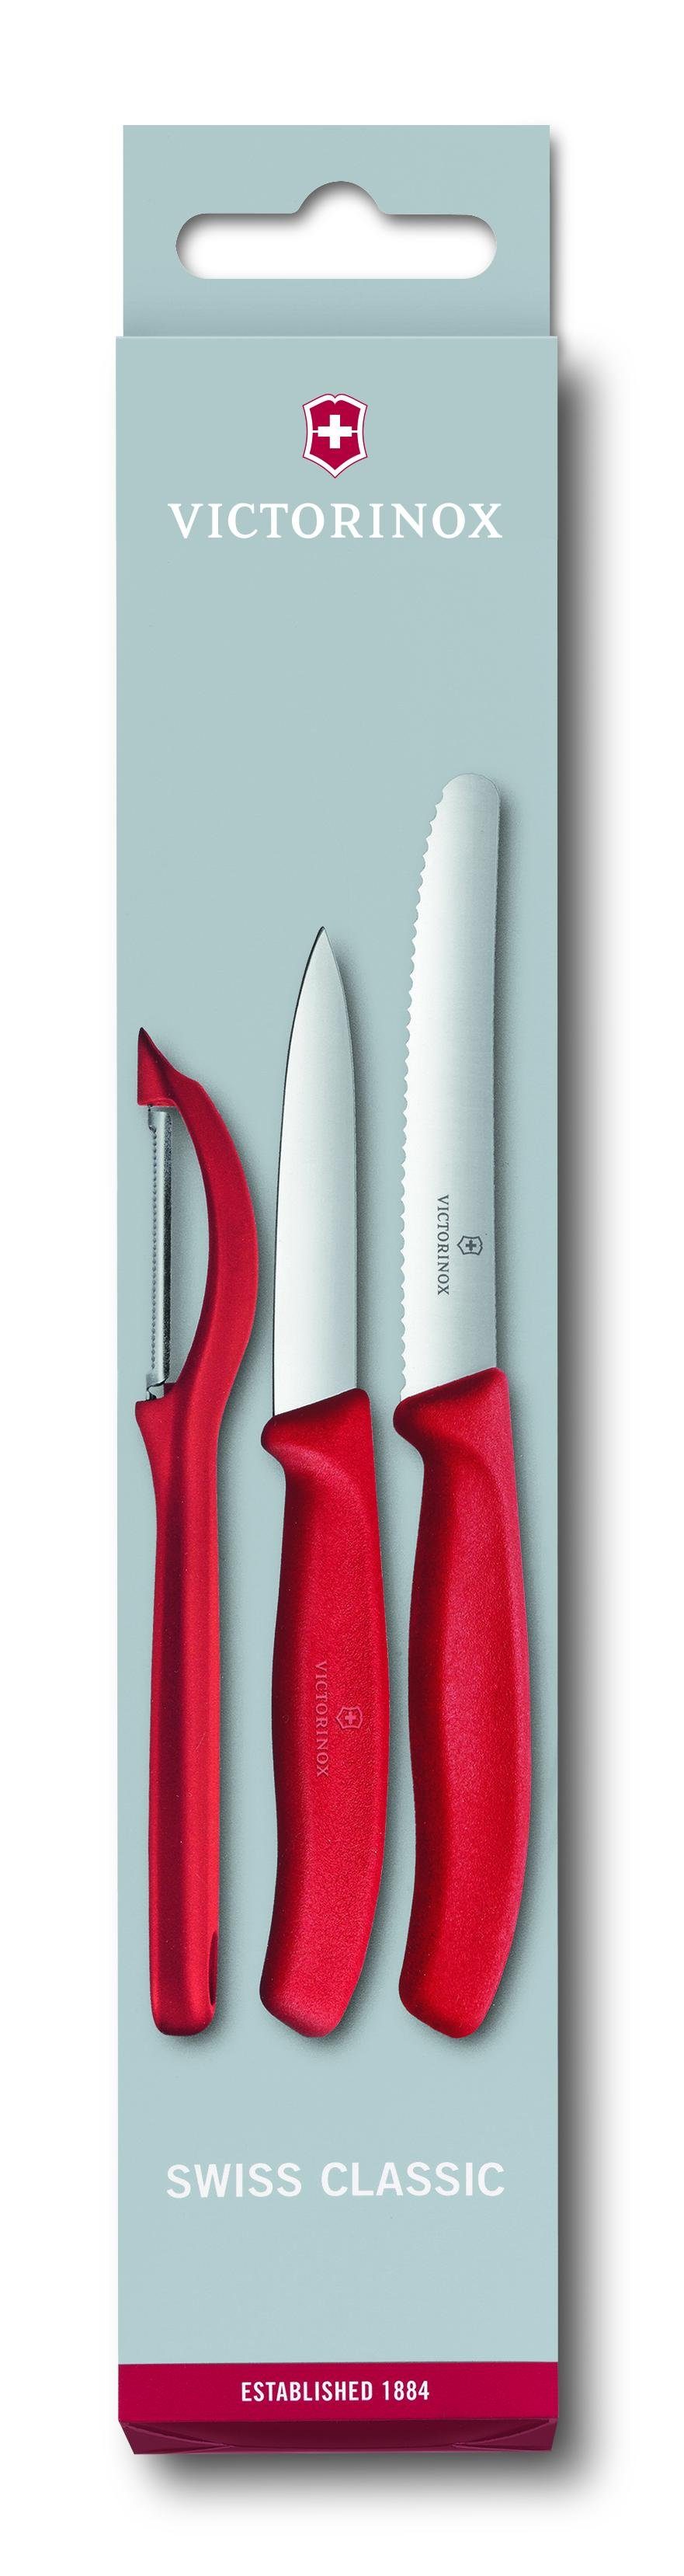 Schäler, Taschenmesser Swiss mit Gemüsemesser-Set Victorinox 3-teilig, Classic rot